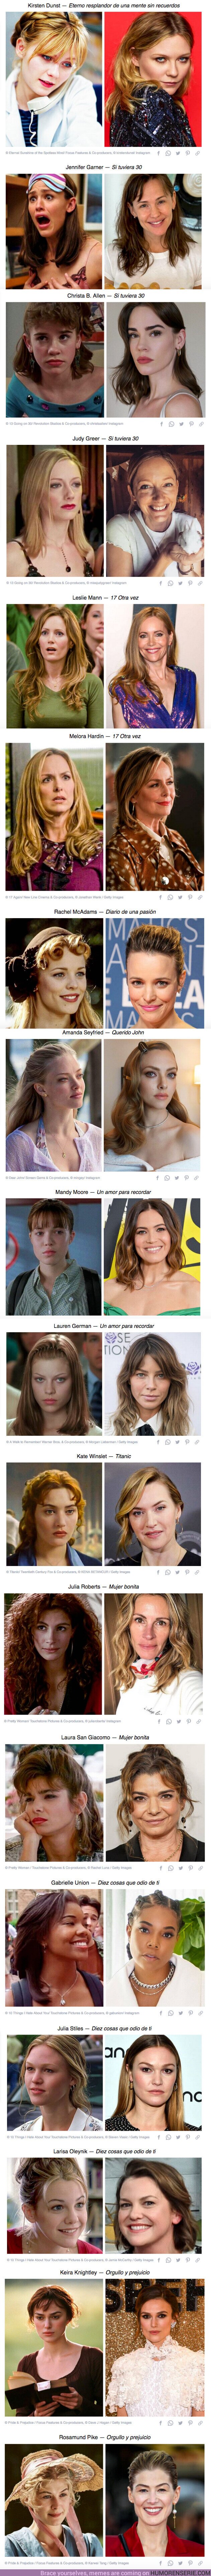 72544 - GALERÍA: Cómo se ven hoy en día 18 actrices de las películas más románticas de nuestra adolescencia